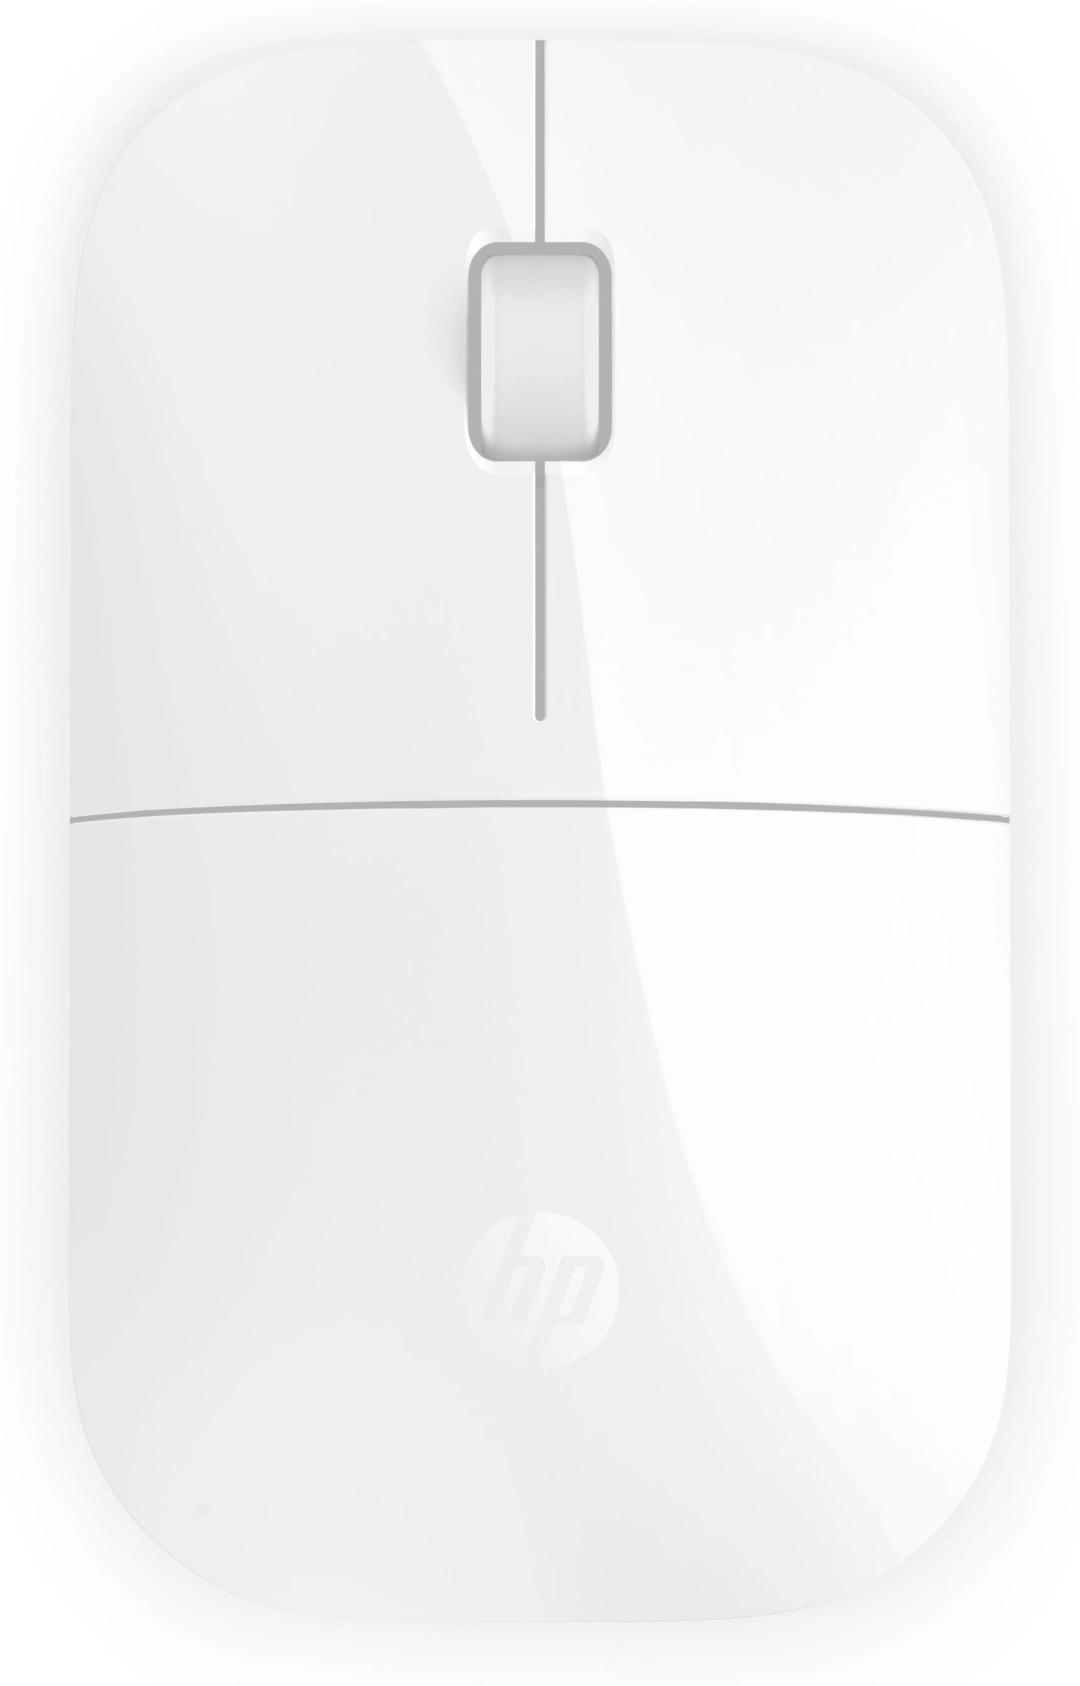 HP Z3700, bílá